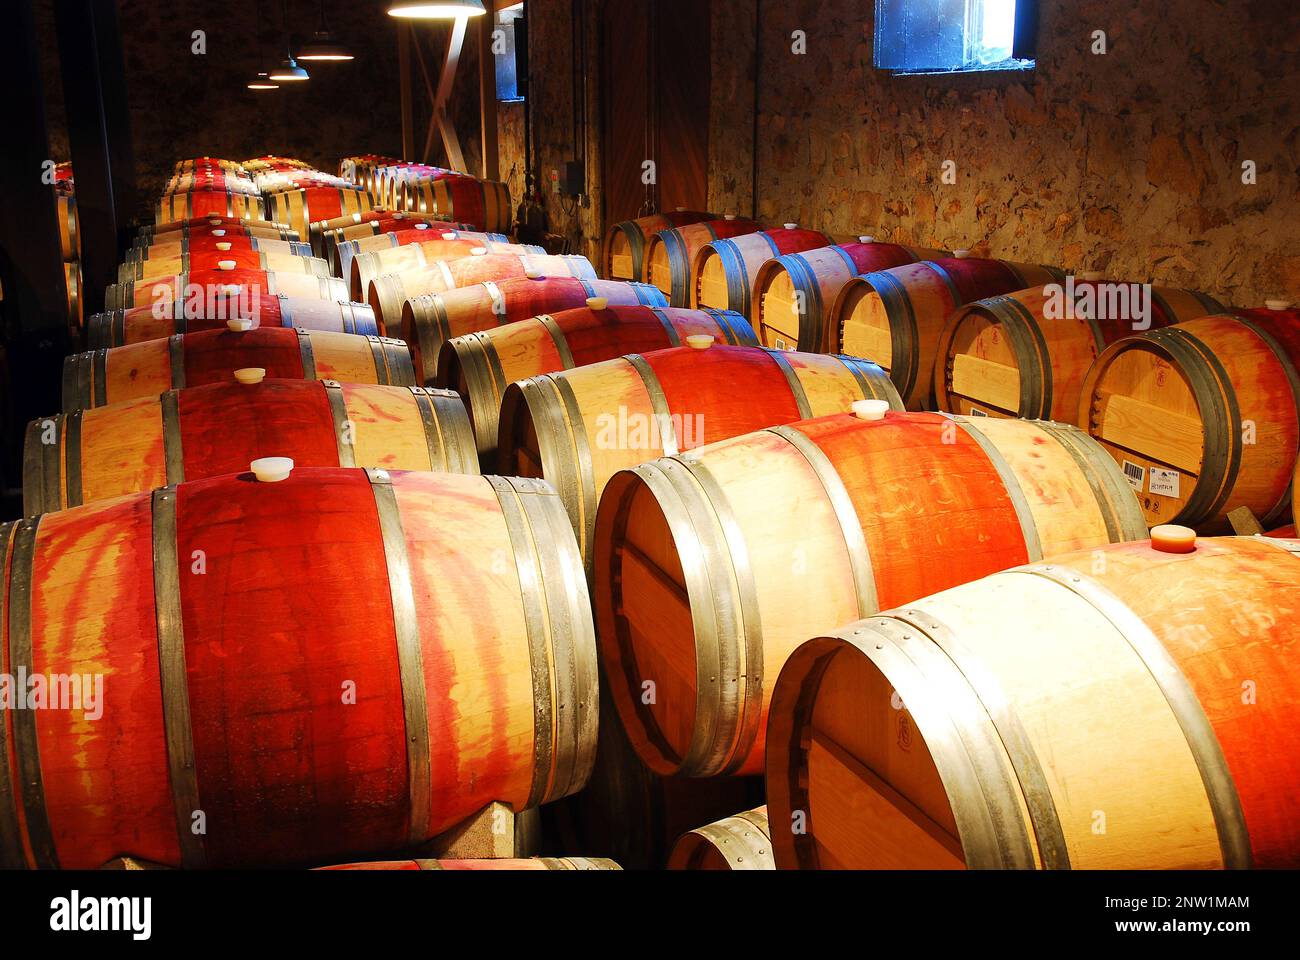 Barils de vin âge dans un sous-sol Banque D'Images